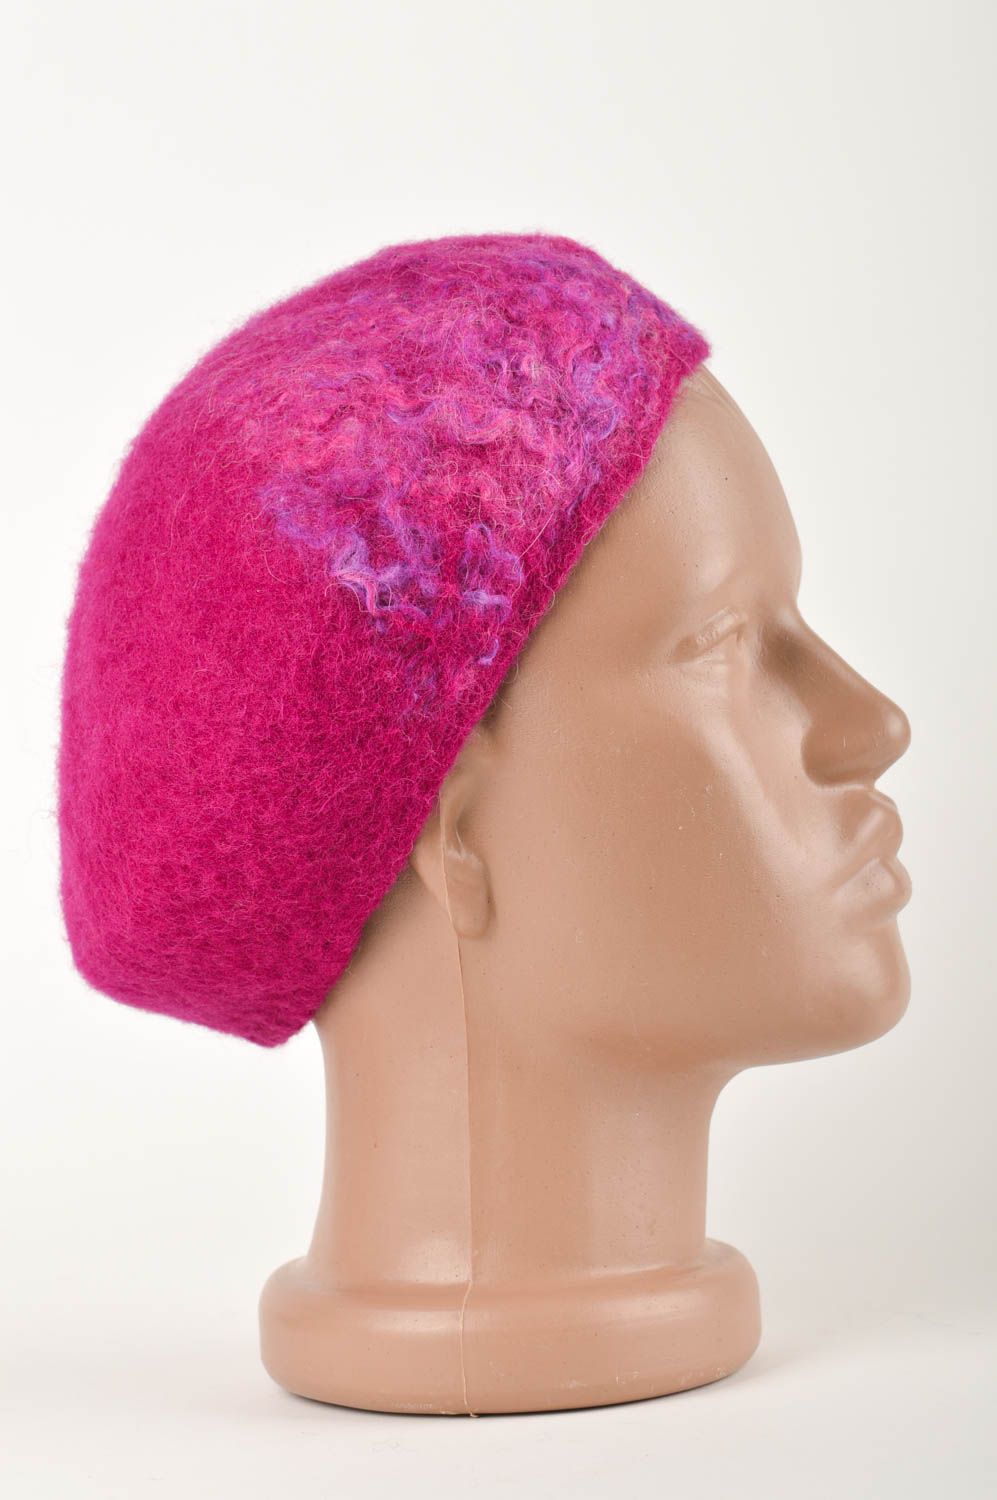 Boina artesanal de fieltro prenda para la cabeza elegante accesorio para mujer foto 2